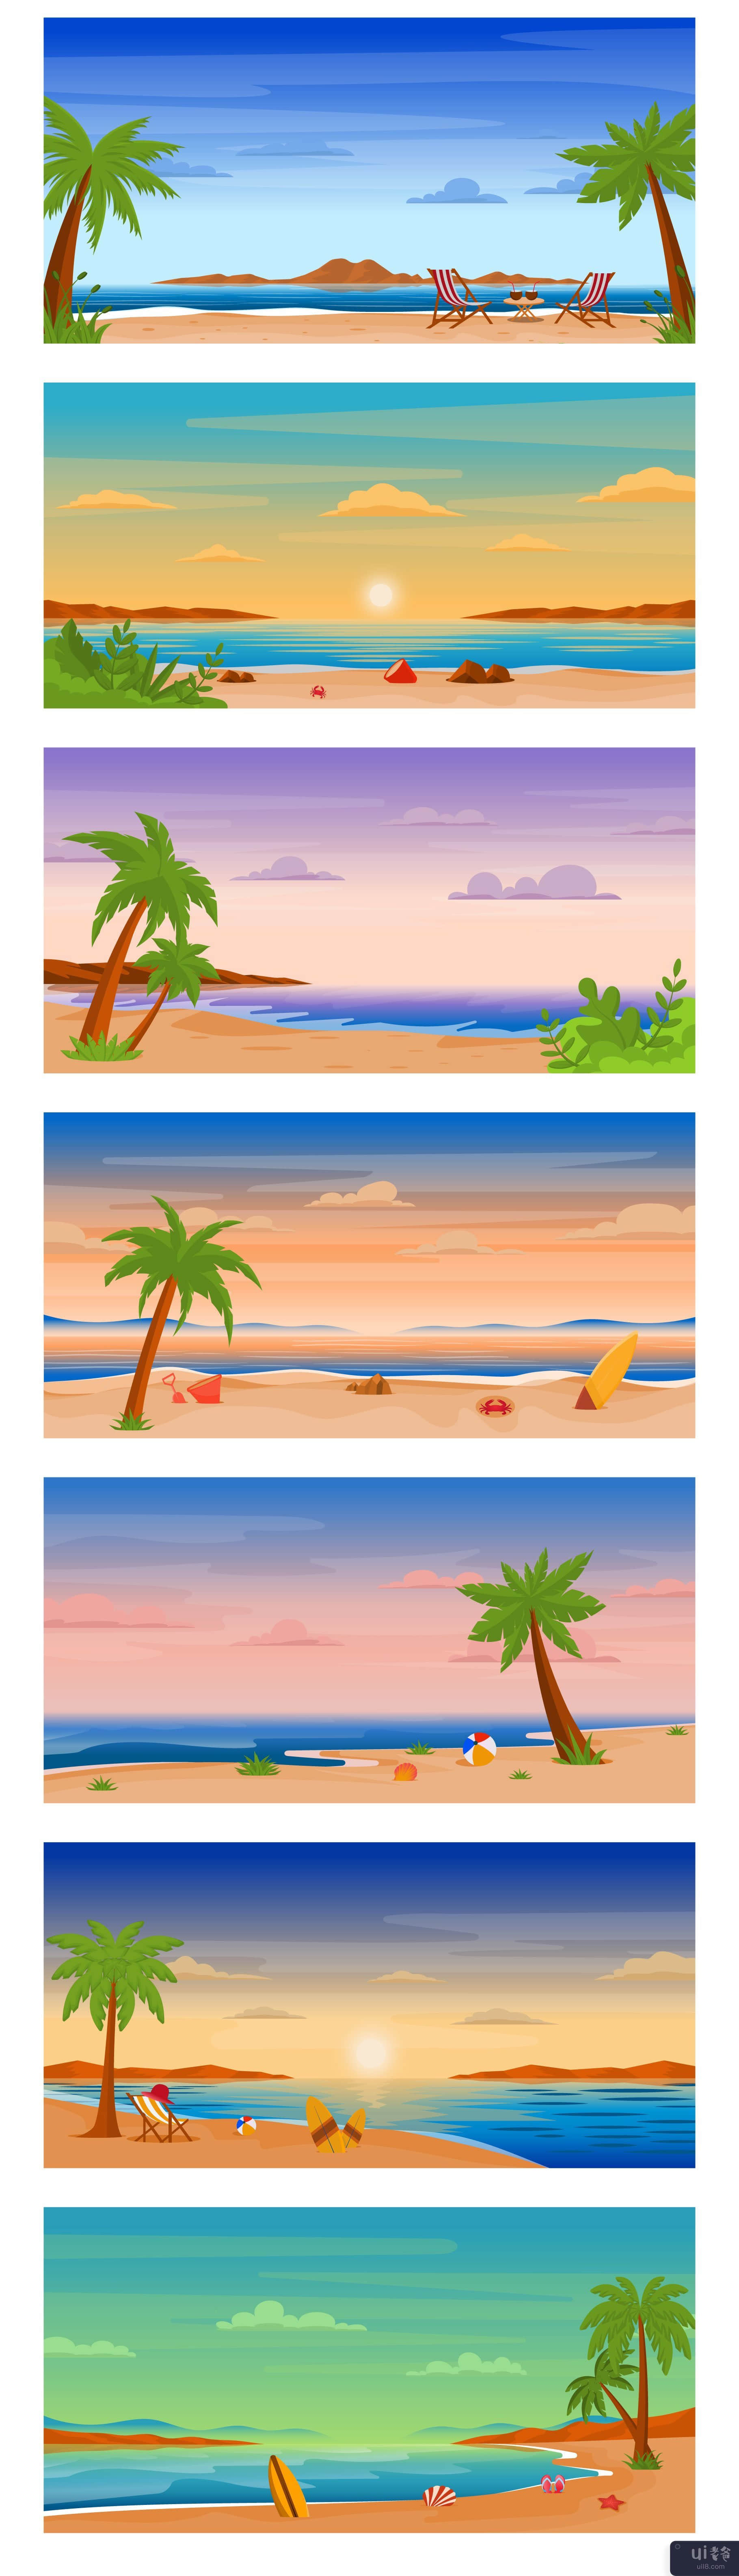 25个大海和海滩背景(25 Sea and Beach Backgrounds)插图1